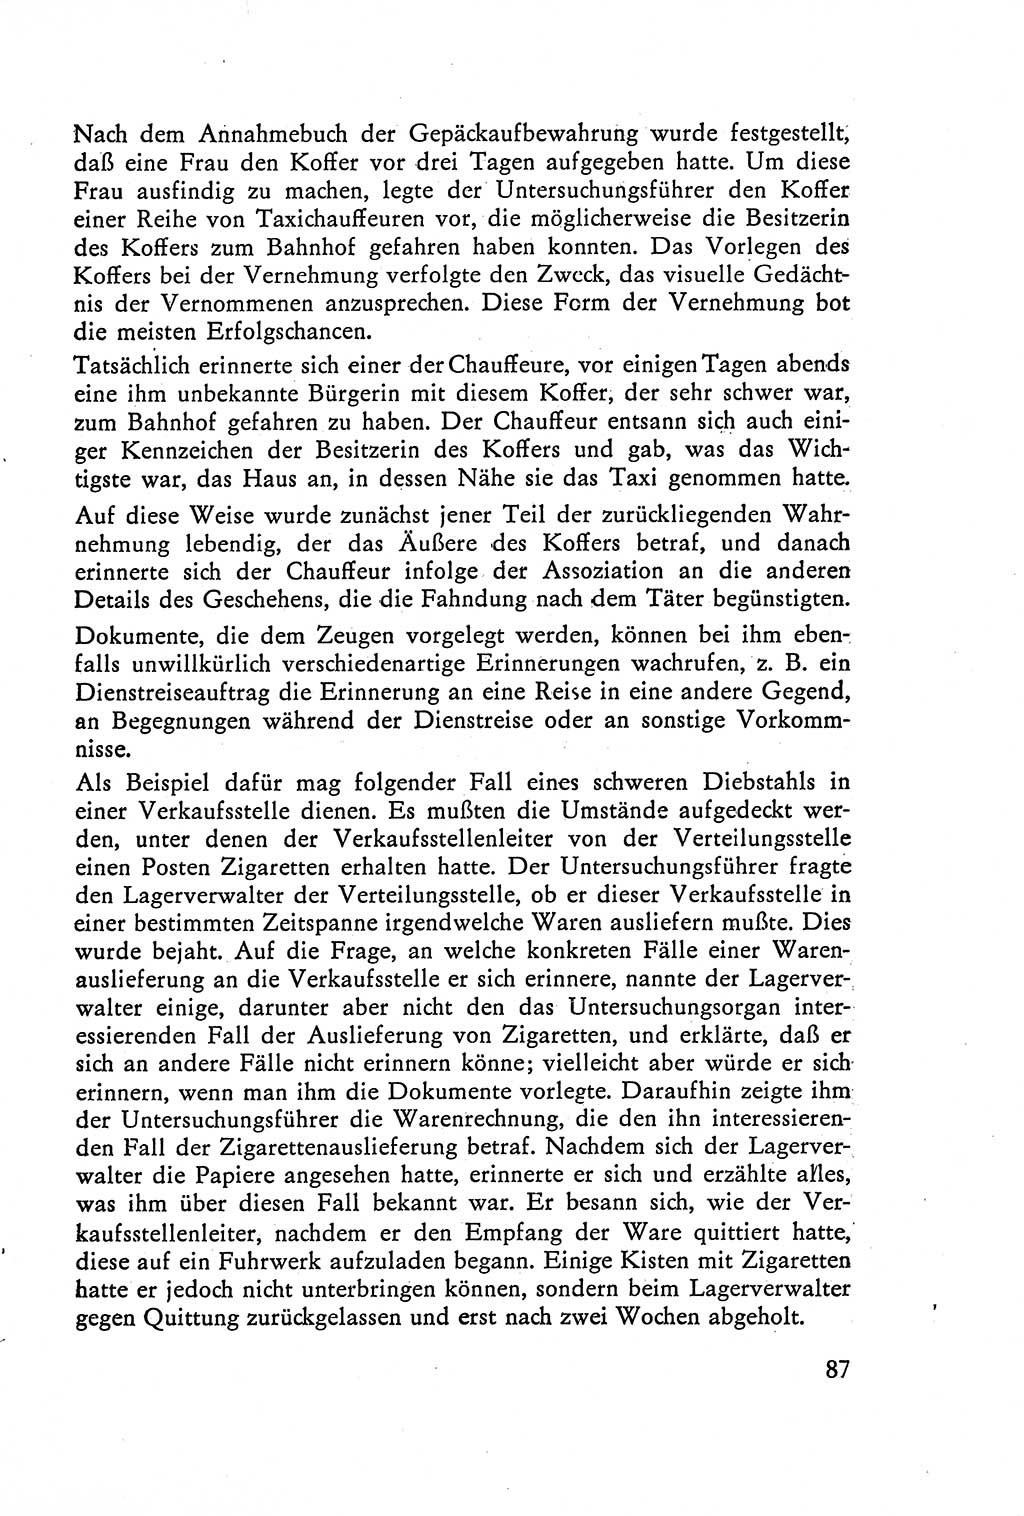 Die Vernehmung [Deutsche Demokratische Republik (DDR)] 1960, Seite 87 (Vern. DDR 1960, S. 87)